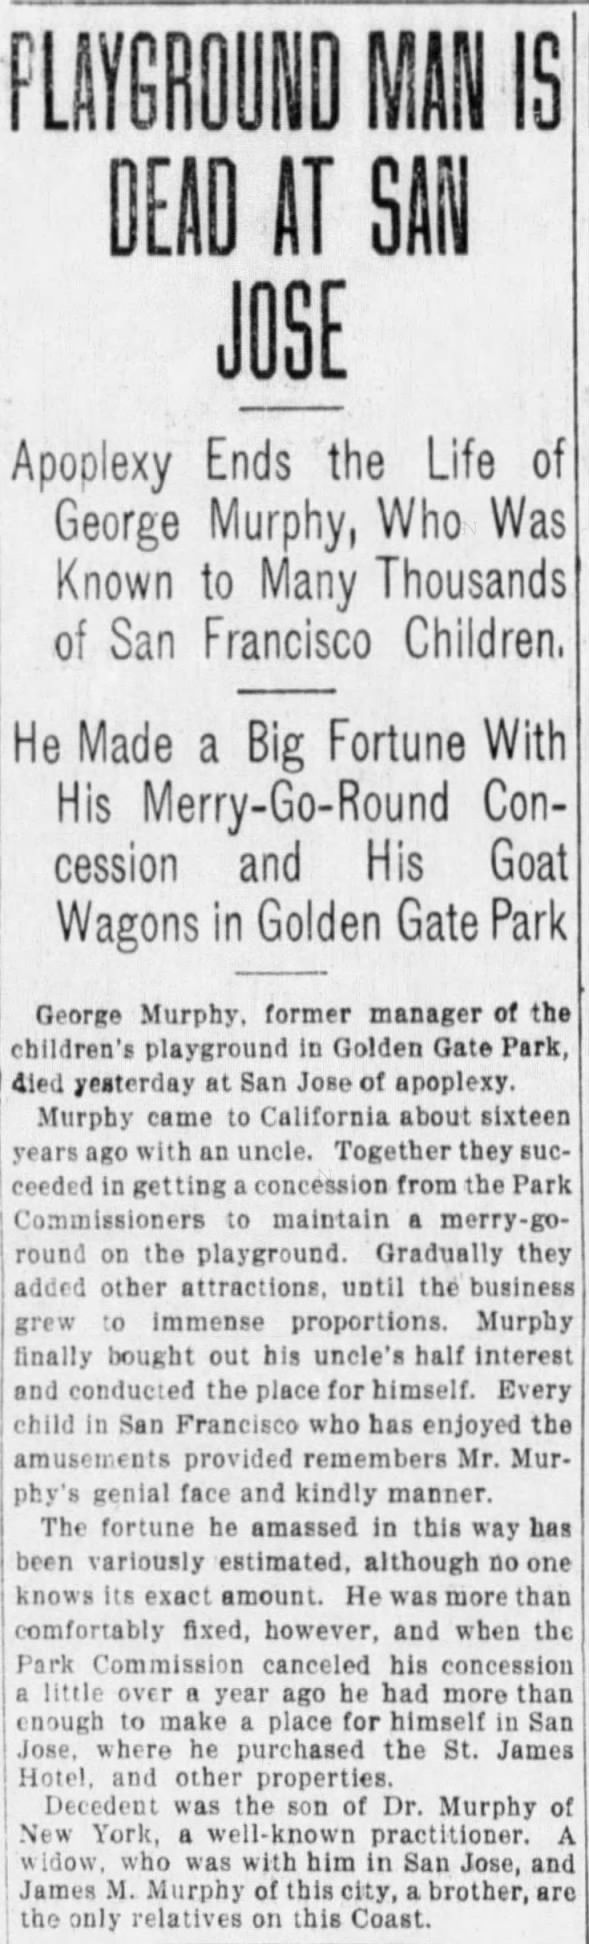 George Murphy dead
Children's Playground
Golden Gate Park